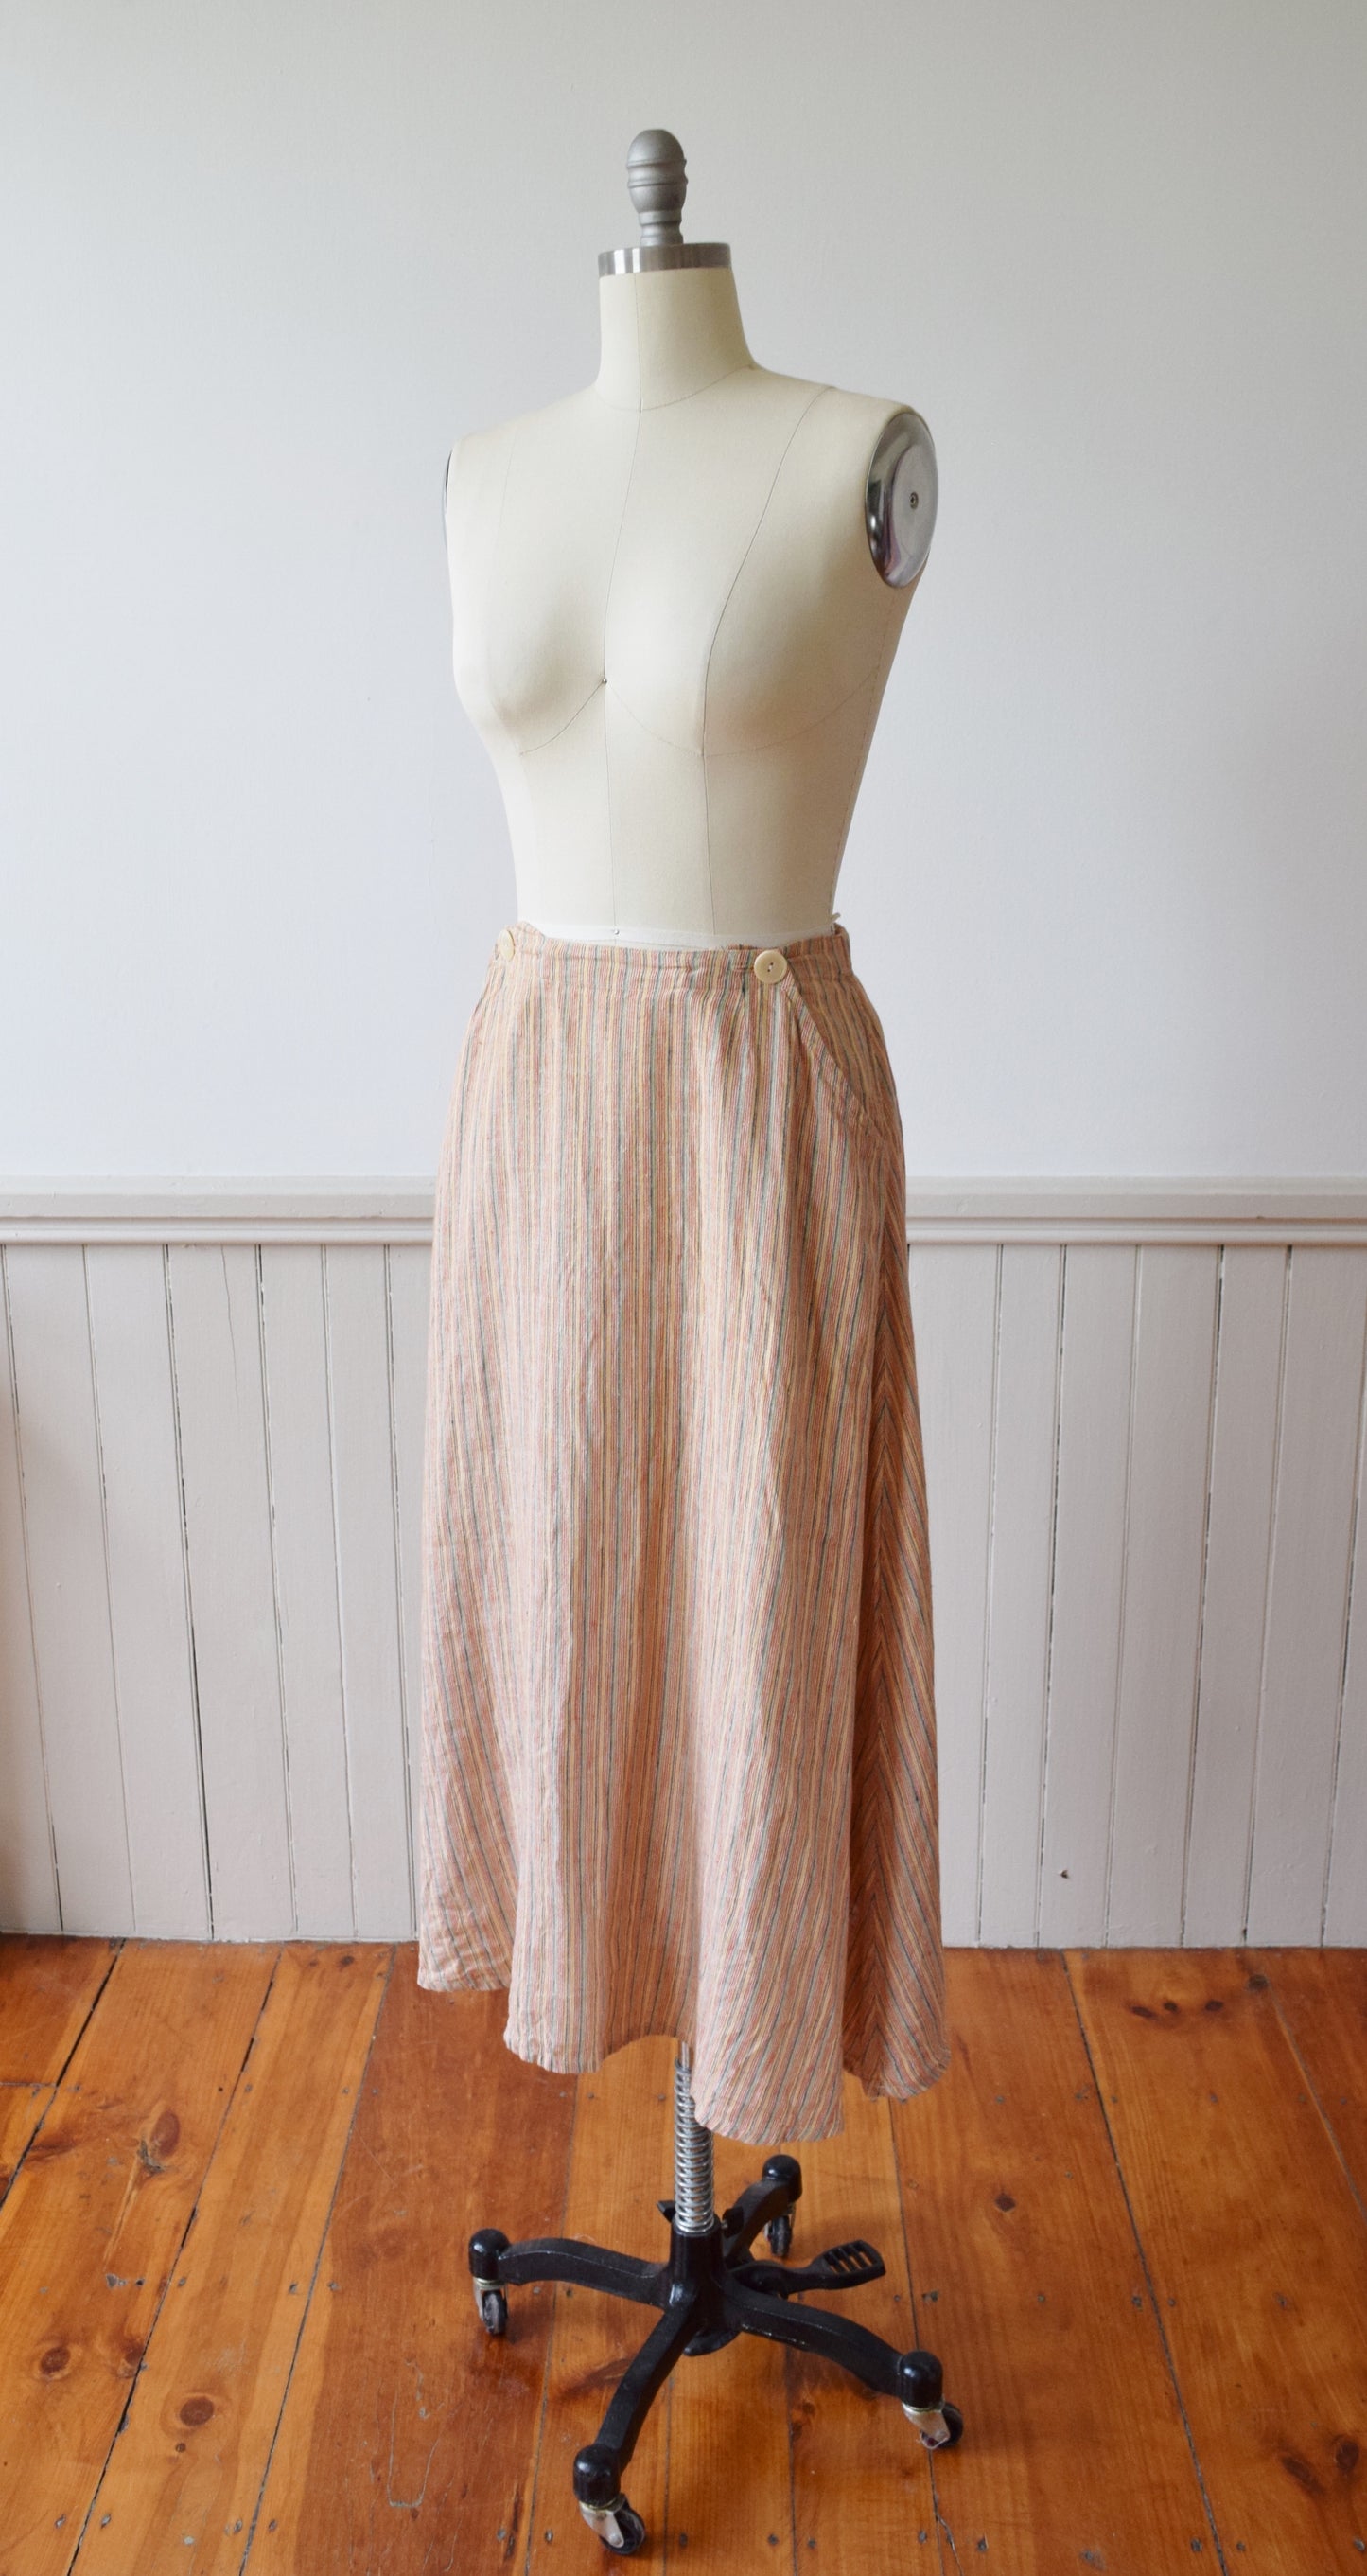 Woven Stripe Linen Skirt by Flax | M